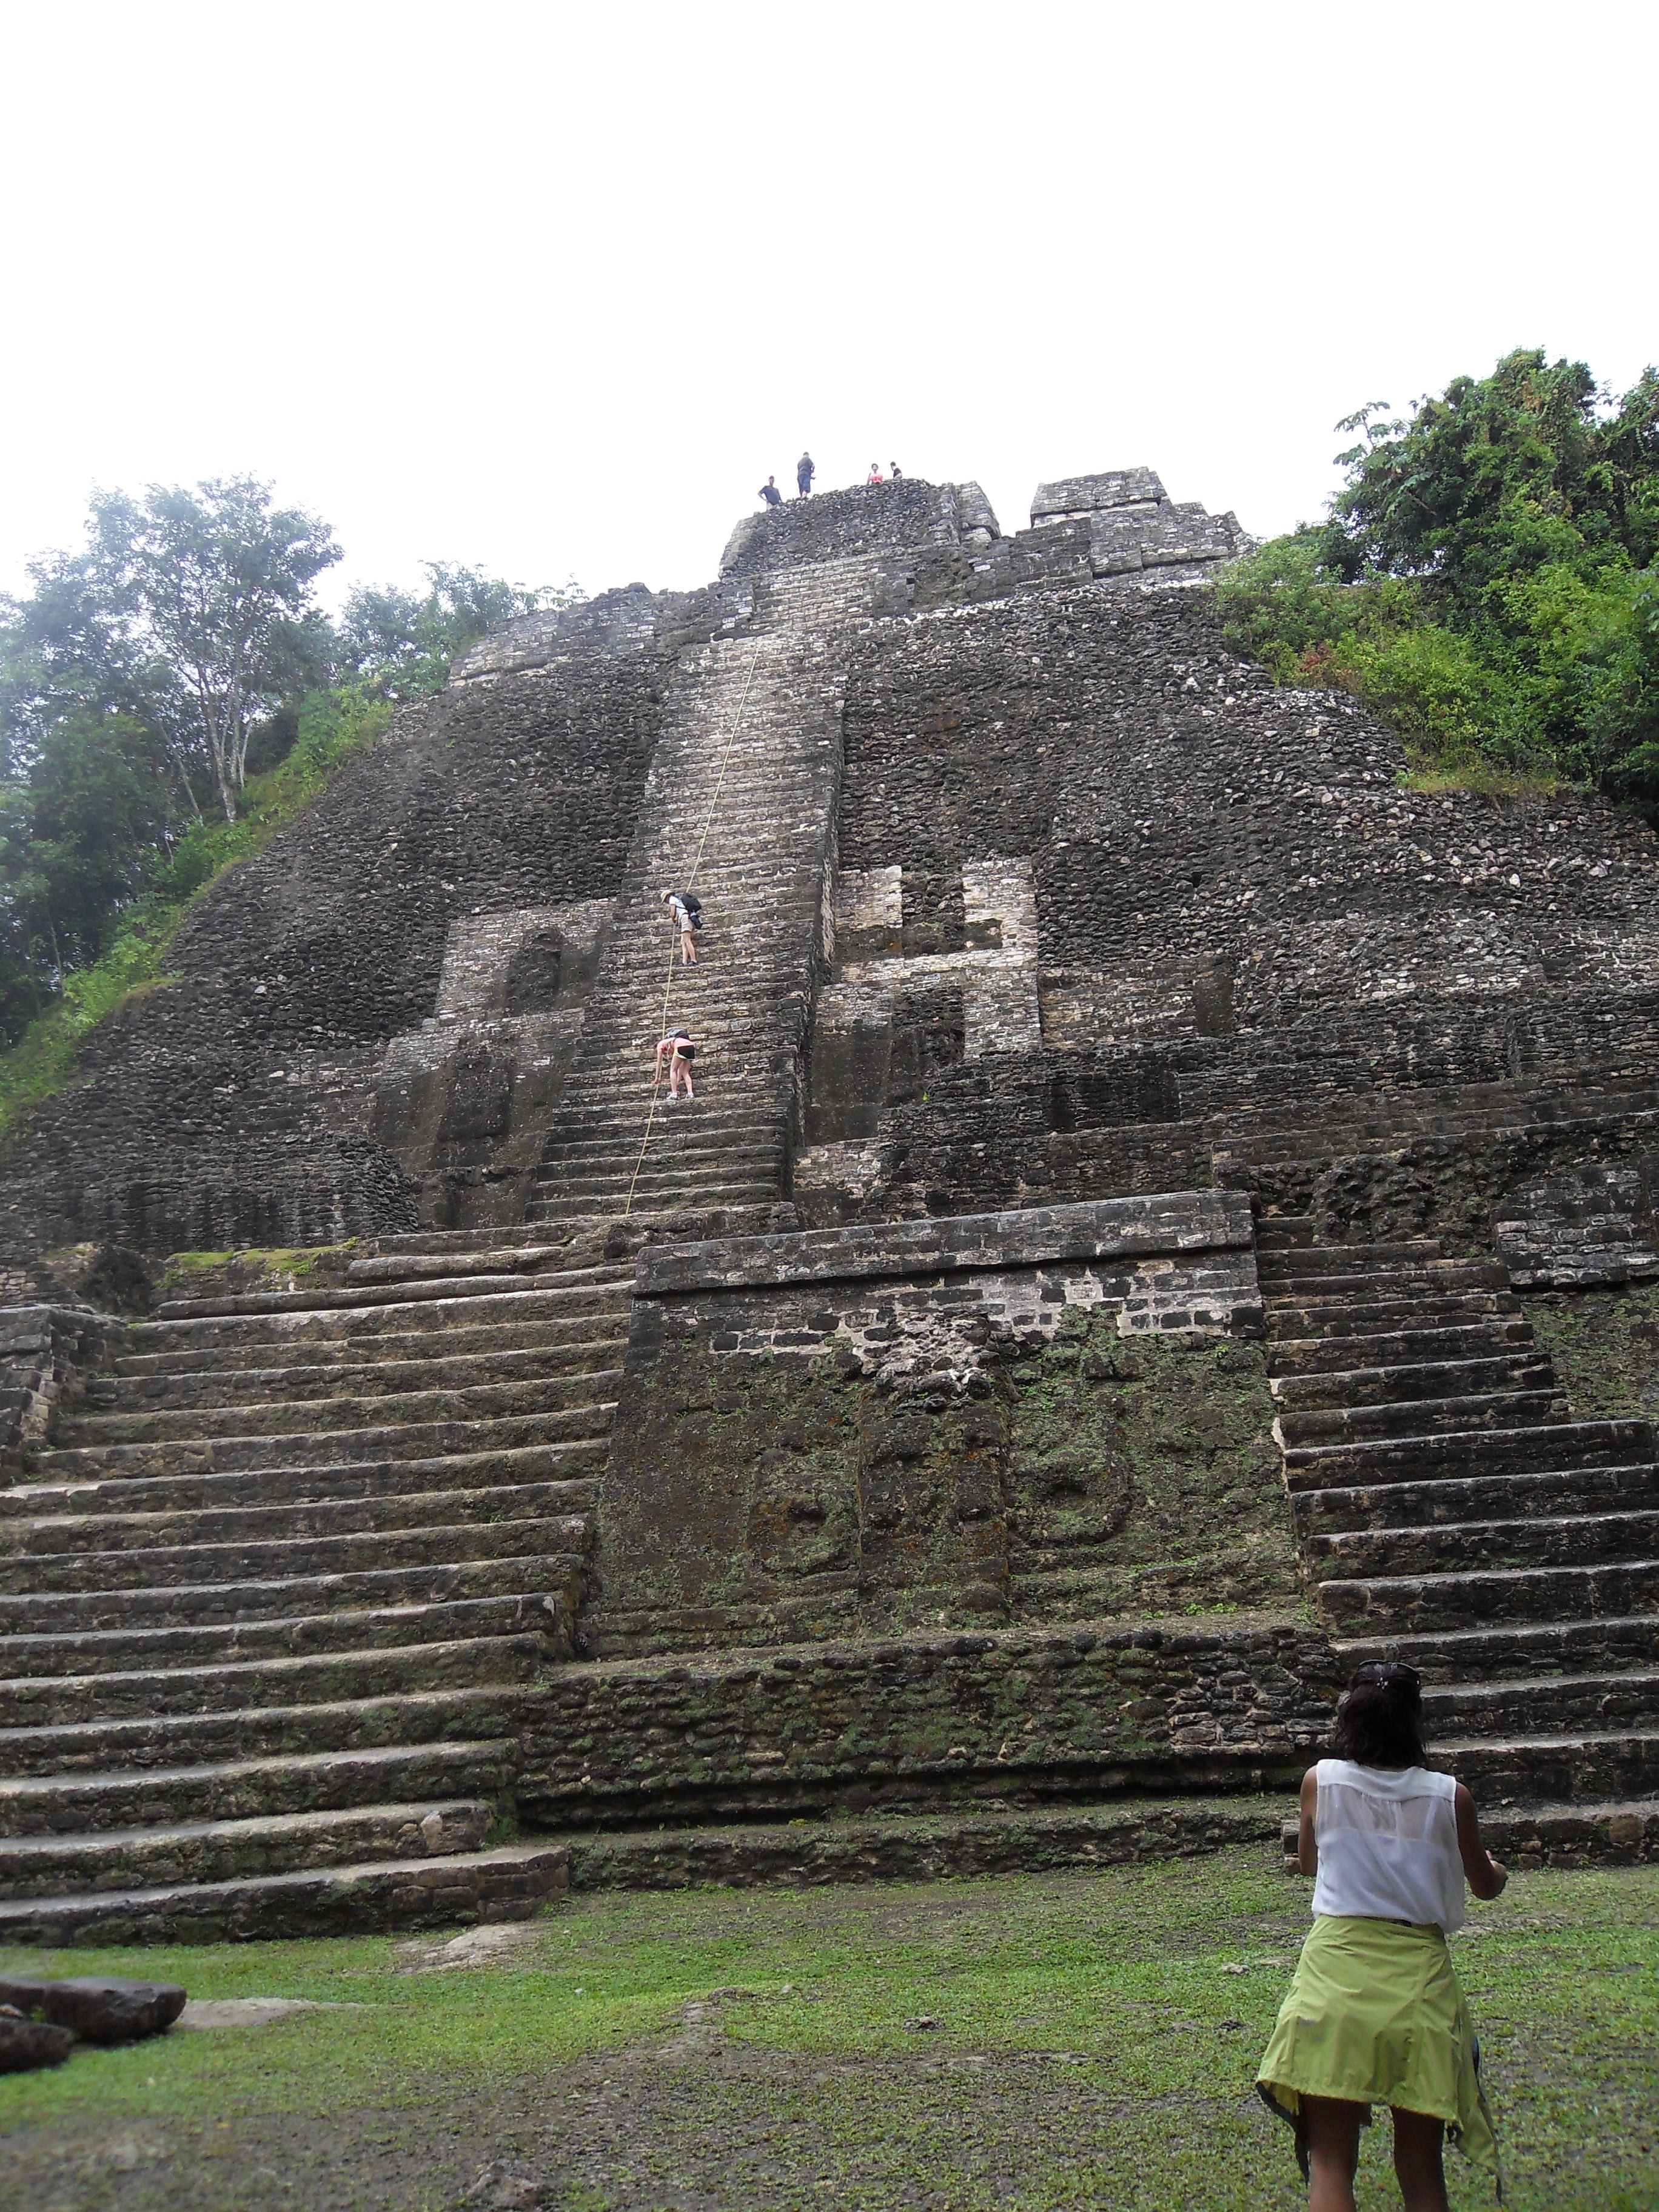 Mayan Pyramids, Lamanai, Belize